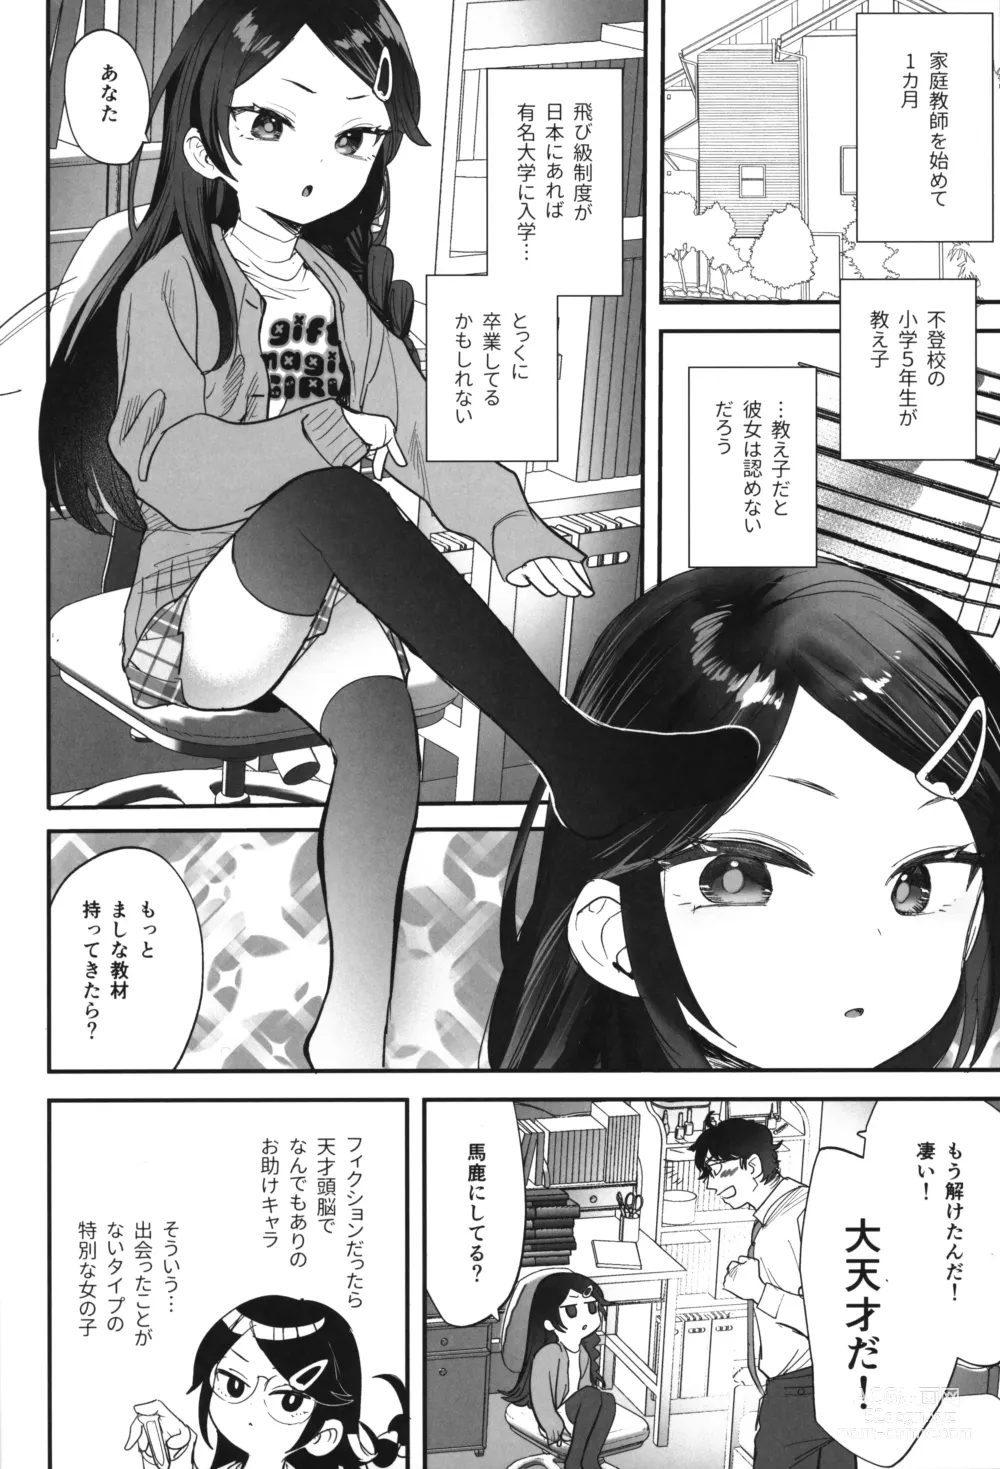 Page 3 of doujinshi Futoukou de Daitensai no Kimi no Ana ga Umaru made